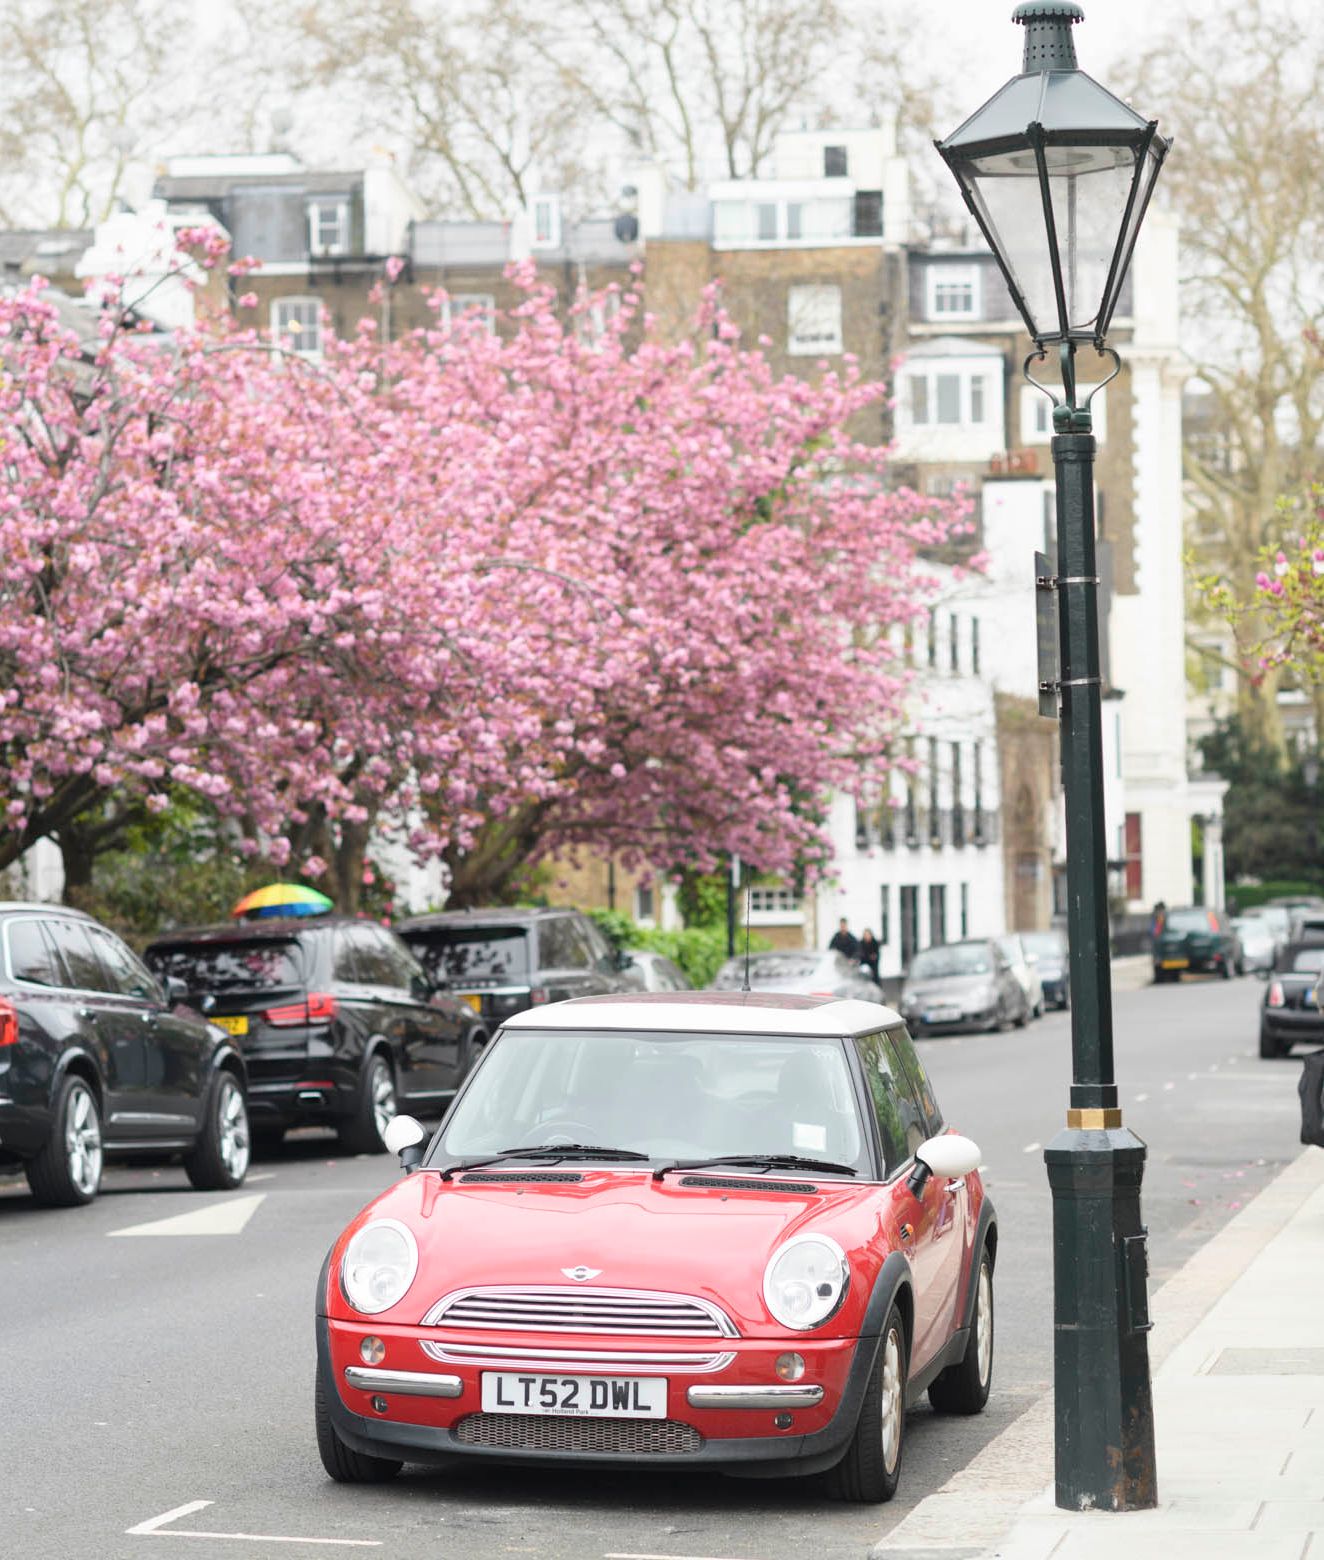 Spring flowers in London